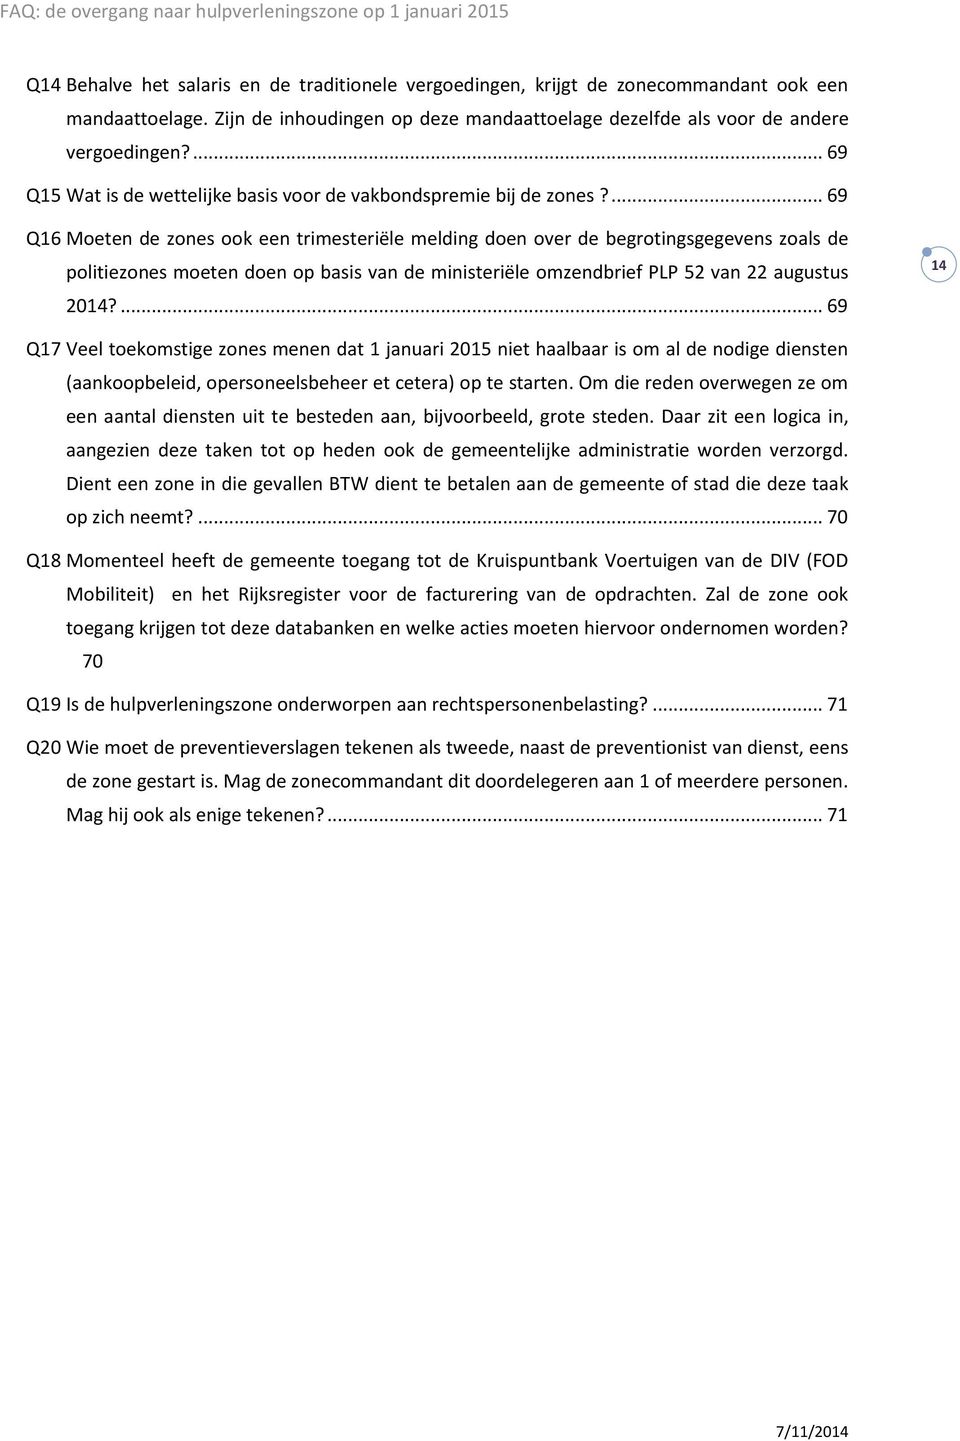 ... 69 Q16 Moeten de zones ook een trimesteriële melding doen over de begrotingsgegevens zoals de politiezones moeten doen op basis van de ministeriële omzendbrief PLP 52 van 22 augustus 2014?